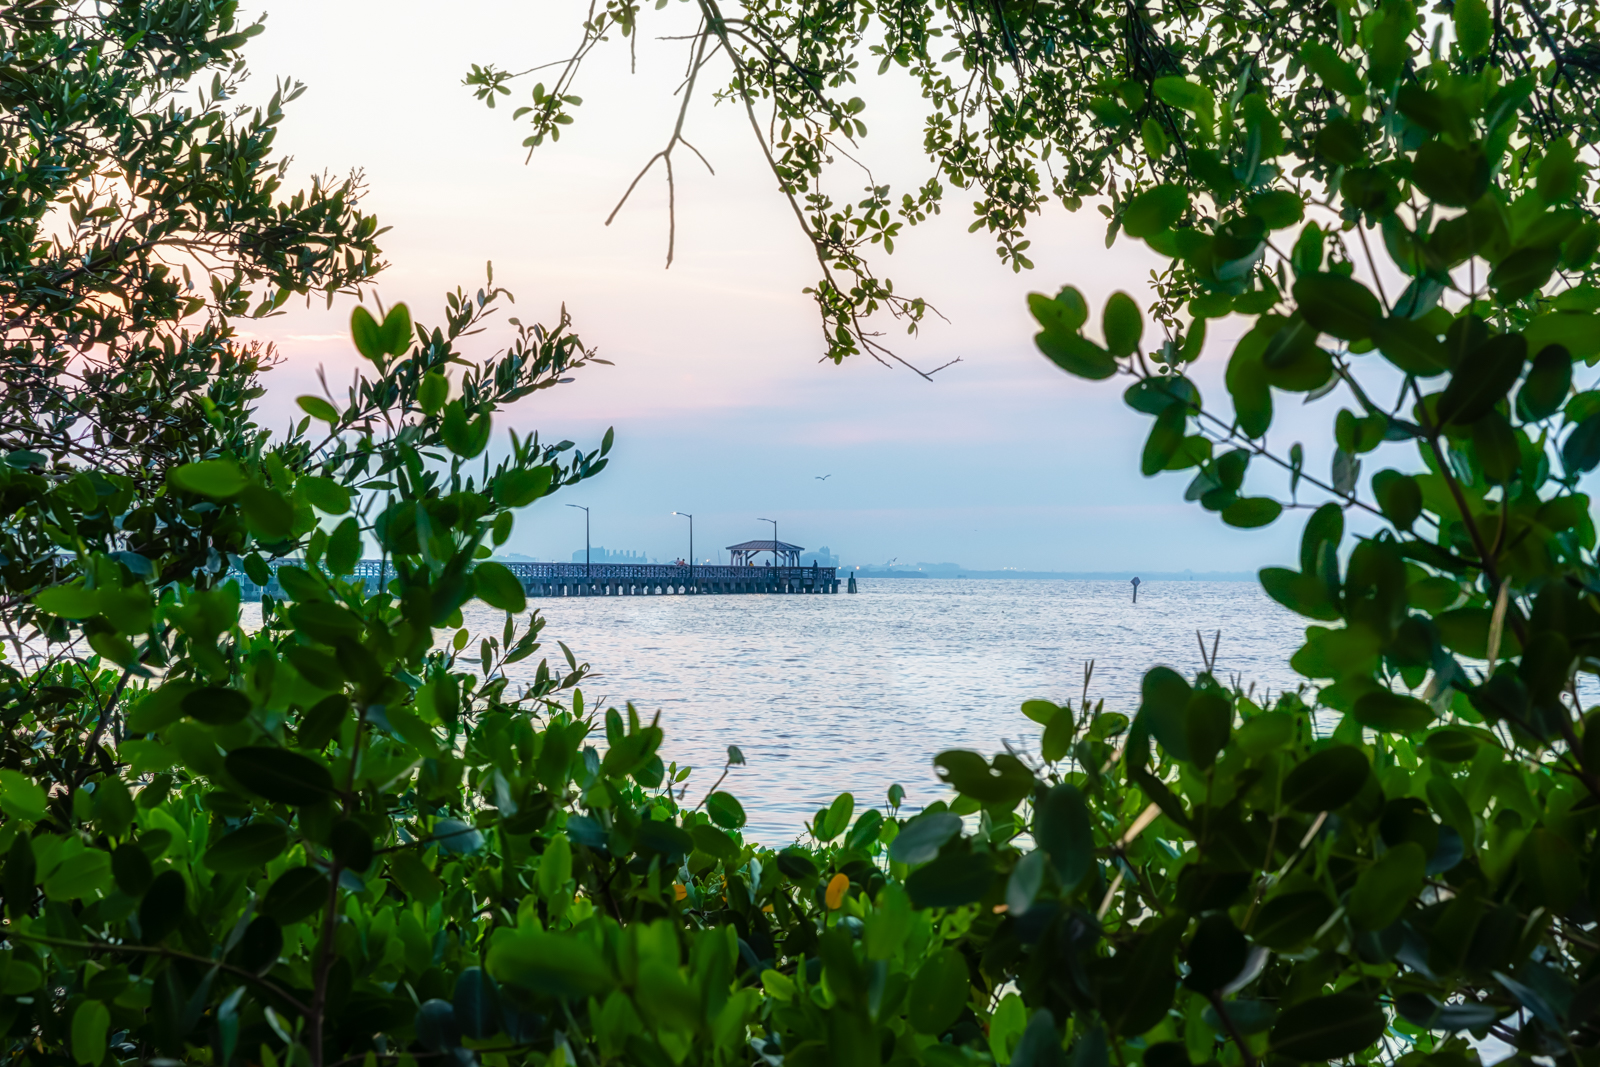 Ballast Point Park Pier Framed by Mangroves